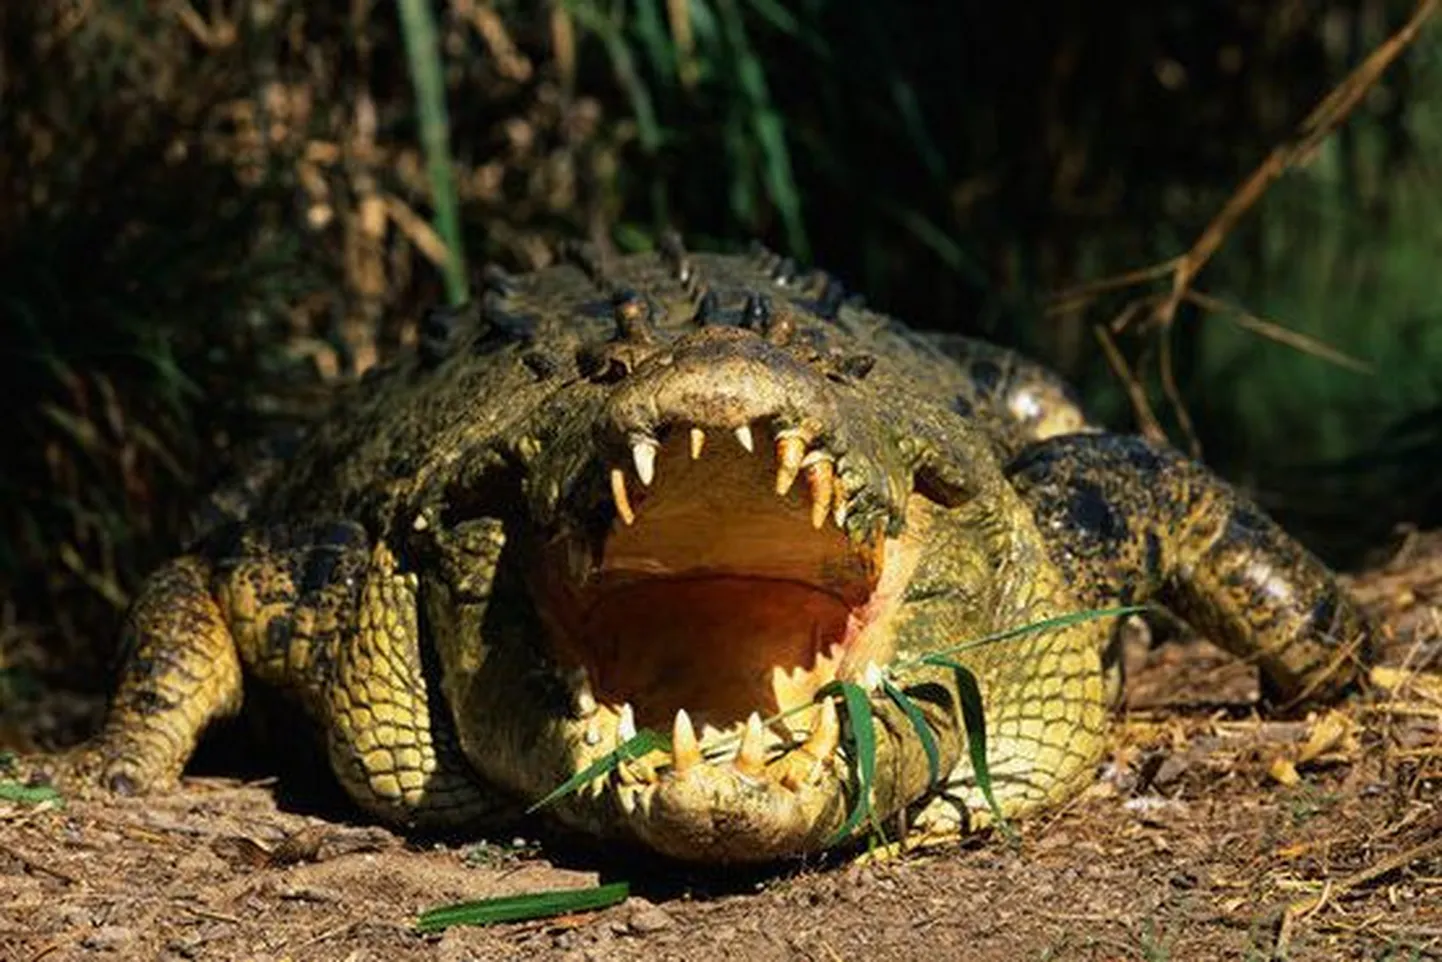 Autoõnnetusse sattunud krokodillile tehti näotaastamisoperatsioon